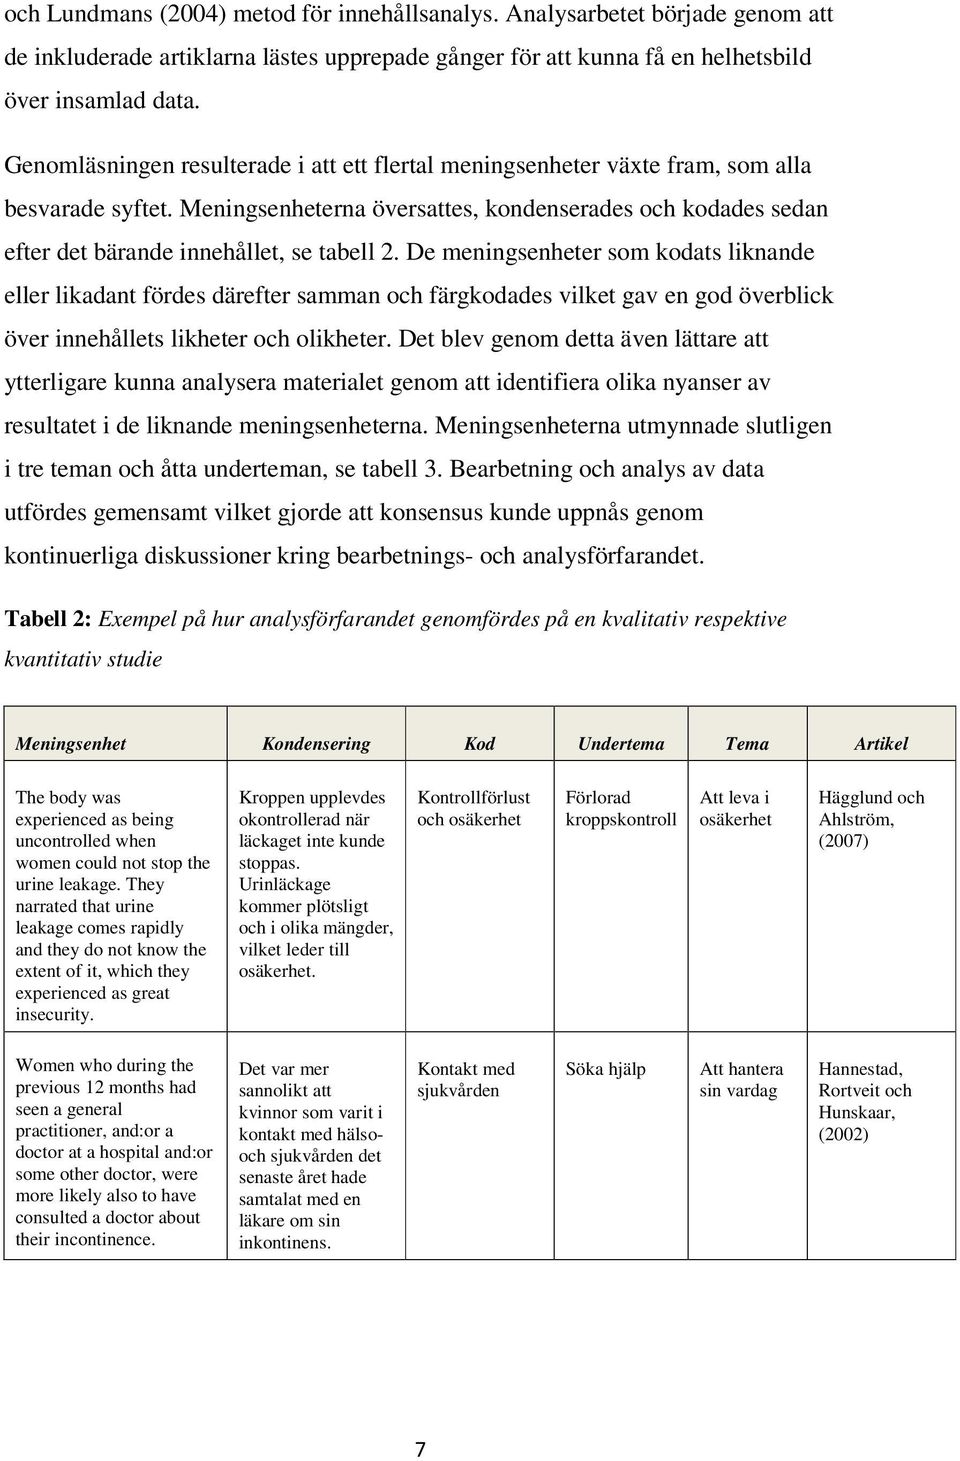 Meningsenheterna översattes, kondenserades och kodades sedan efter det bärande innehållet, se tabell 2.